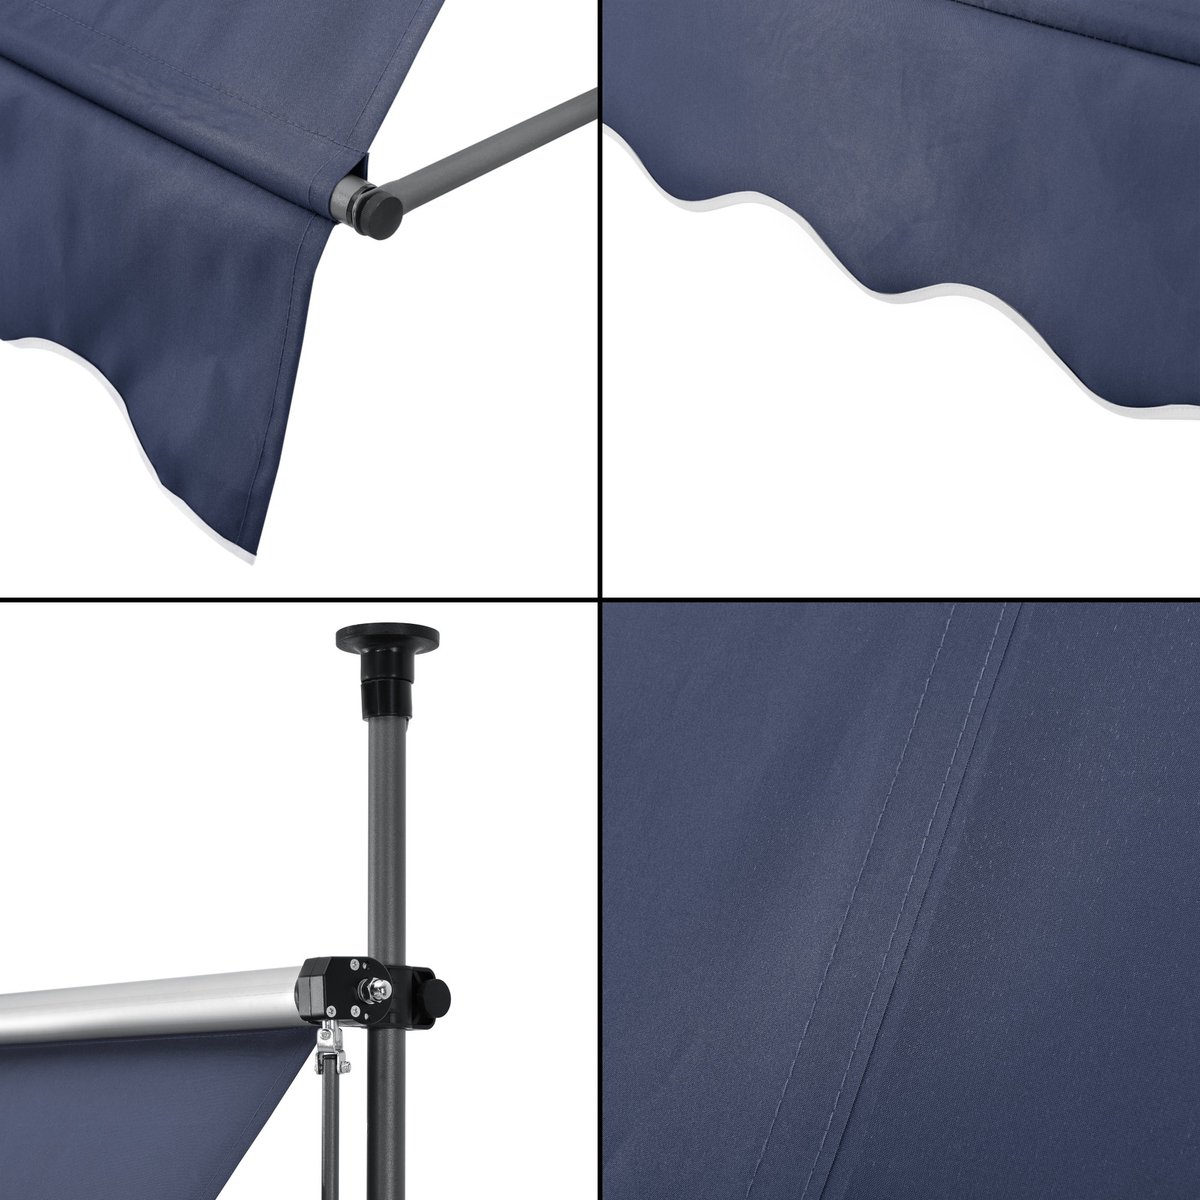 Klemluifel Randal - Uitschuifbare Luifel - Donkerblauw - 350x120 cm - Staal en Stof - Waterafstotend - UV Bescherming